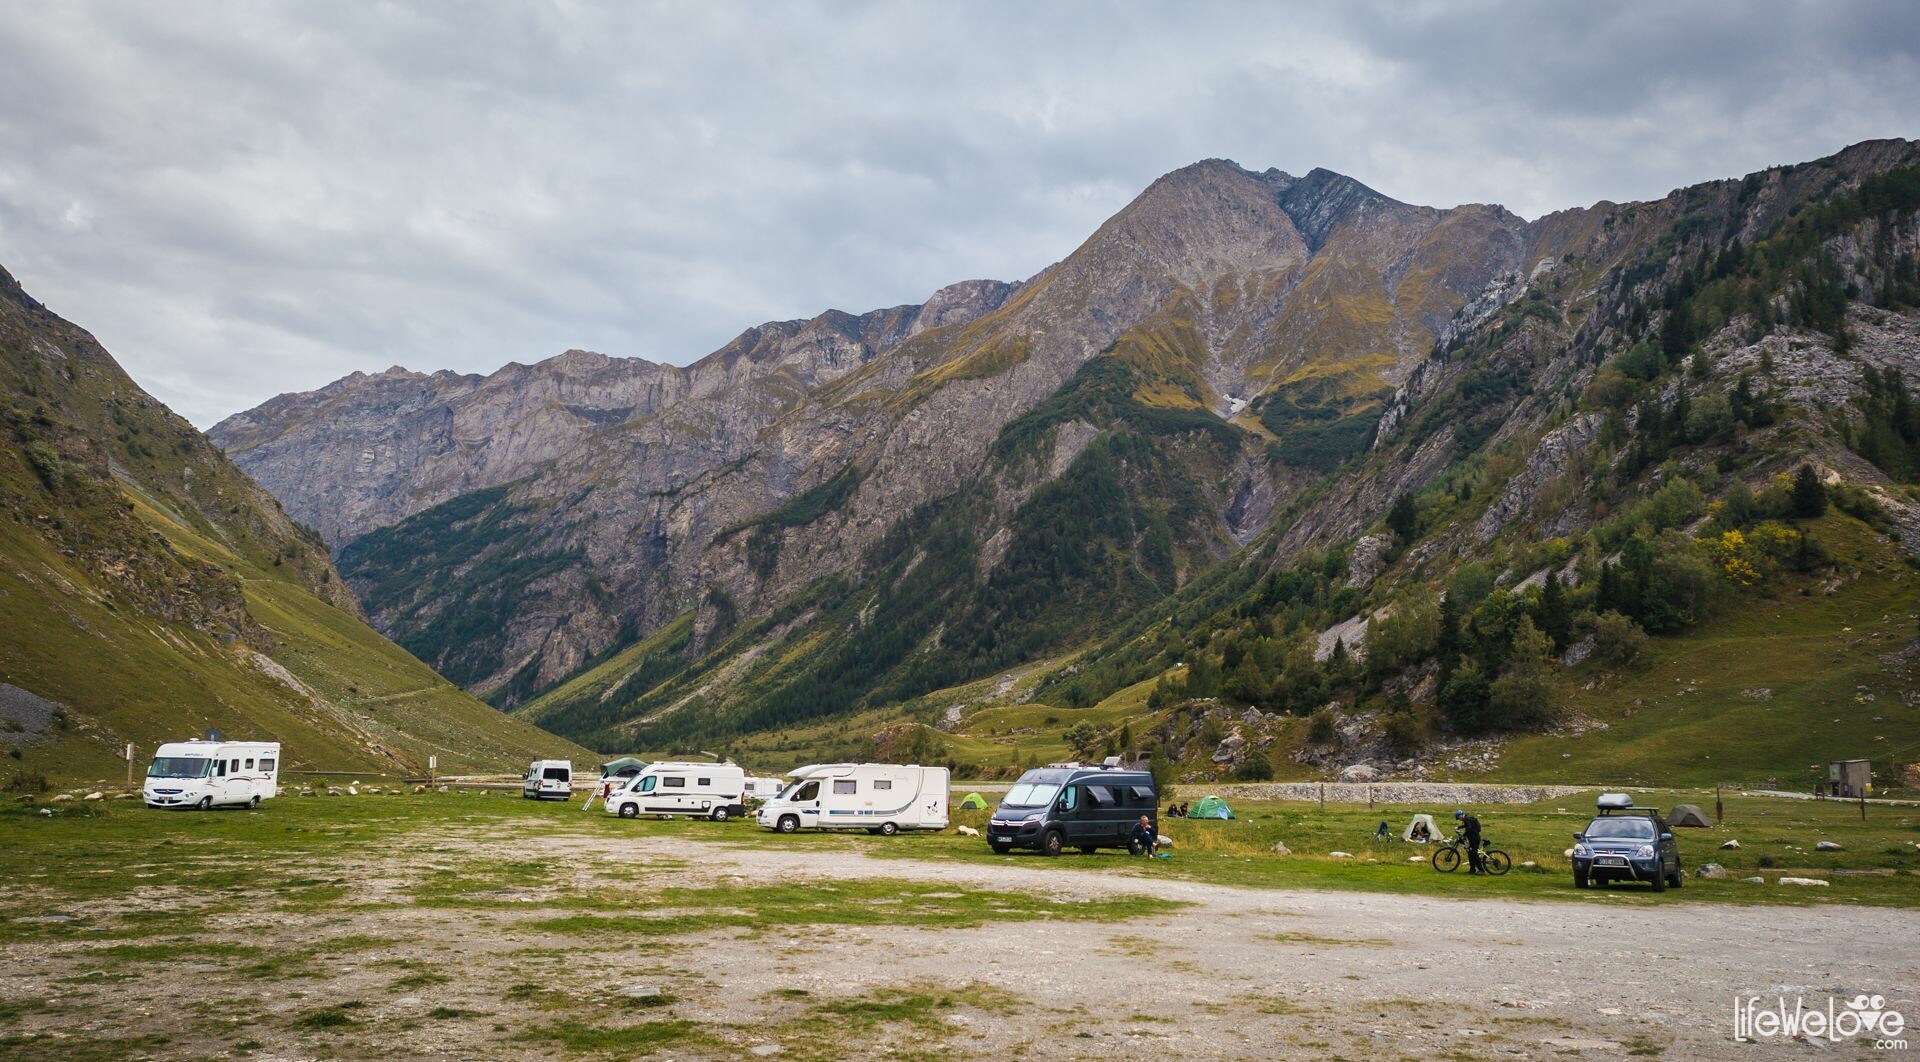 Les Chapieux - free campsite at the foot of the Aiguille des Glaciers					 						